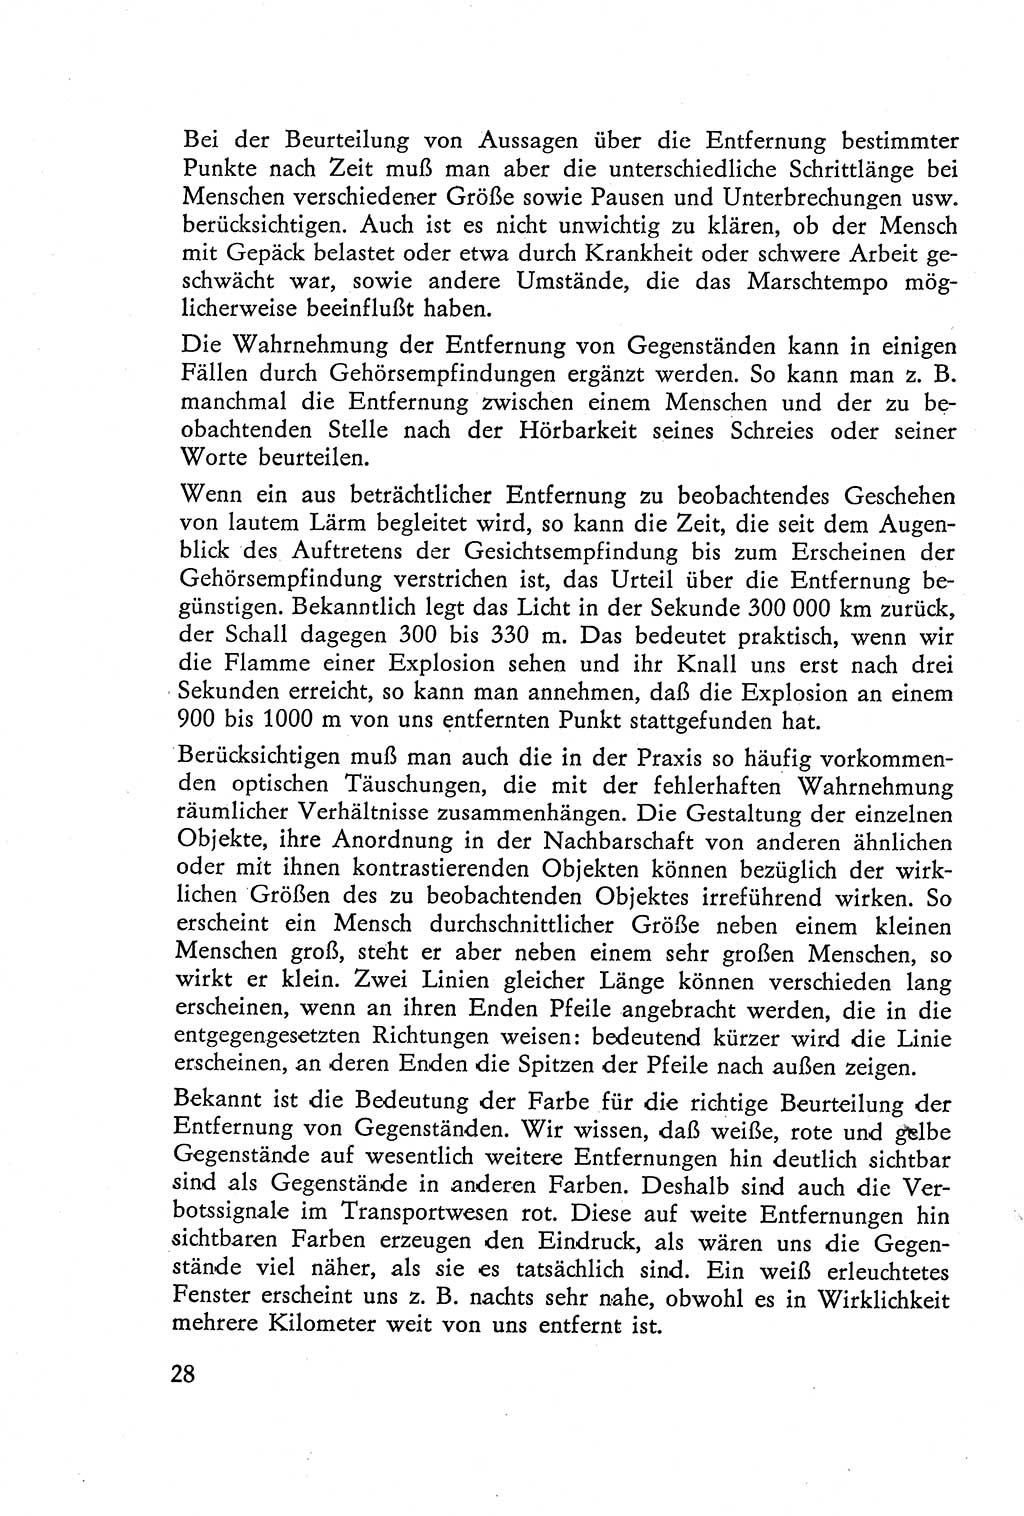 Die Vernehmung [Deutsche Demokratische Republik (DDR)] 1960, Seite 28 (Vern. DDR 1960, S. 28)